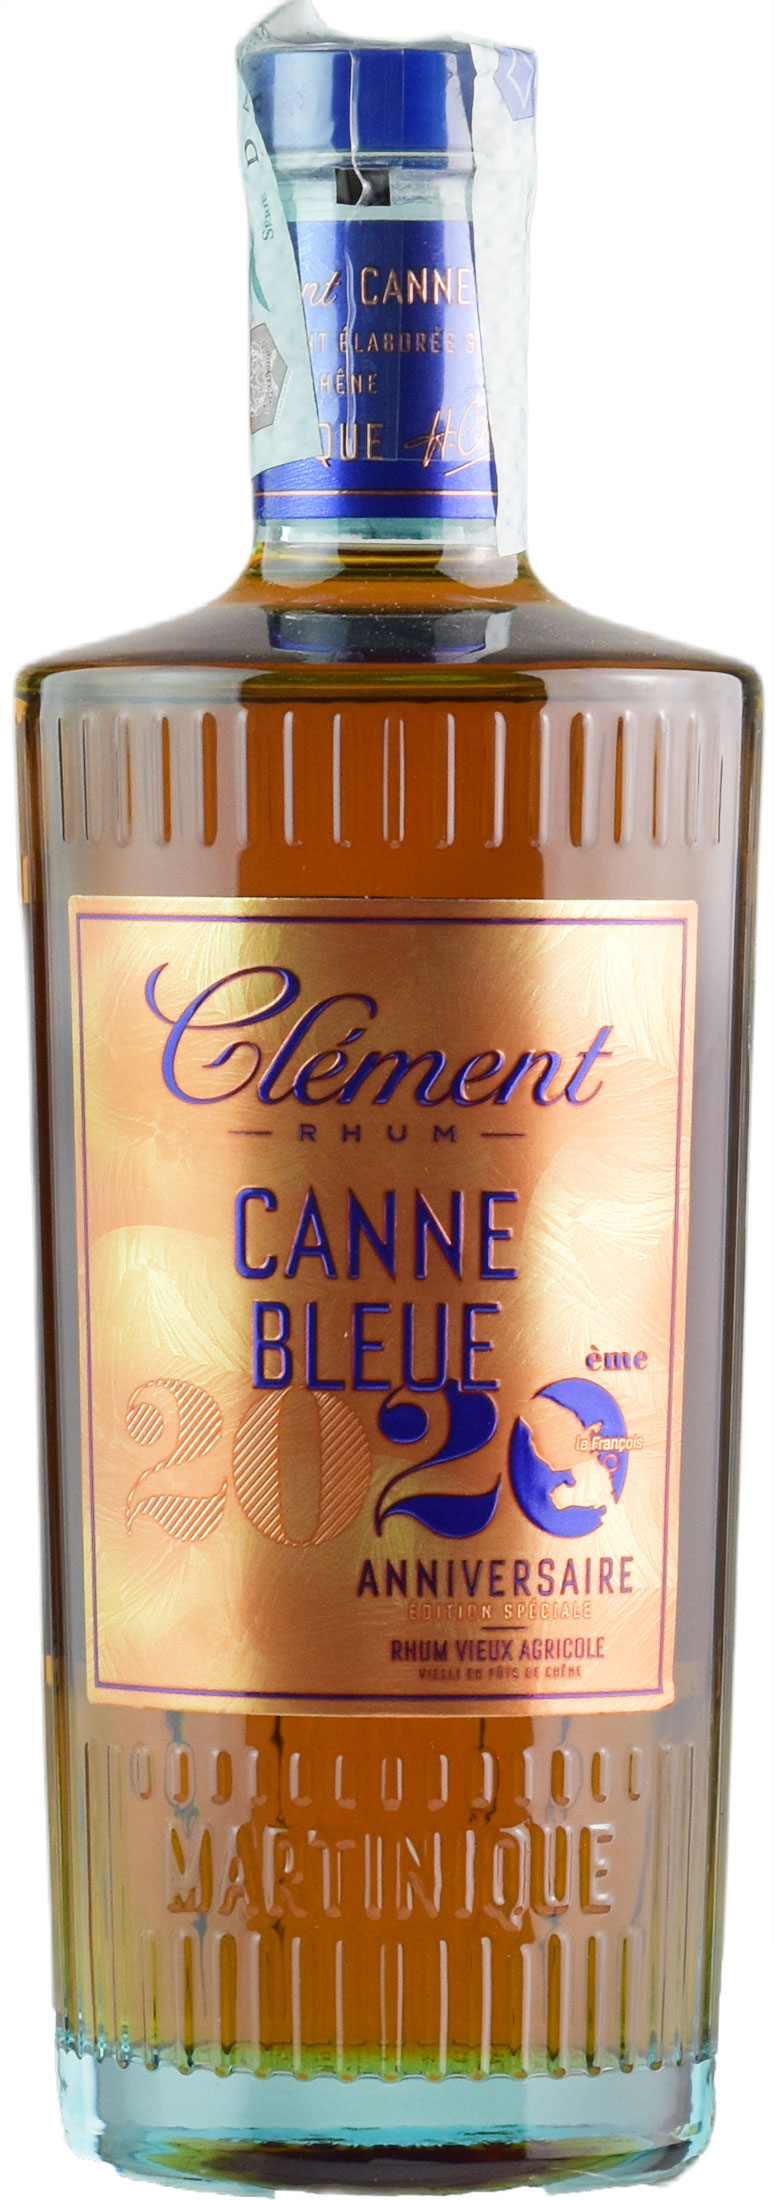 Clement Rhum Vieux Agricole Canne Bleue 2020